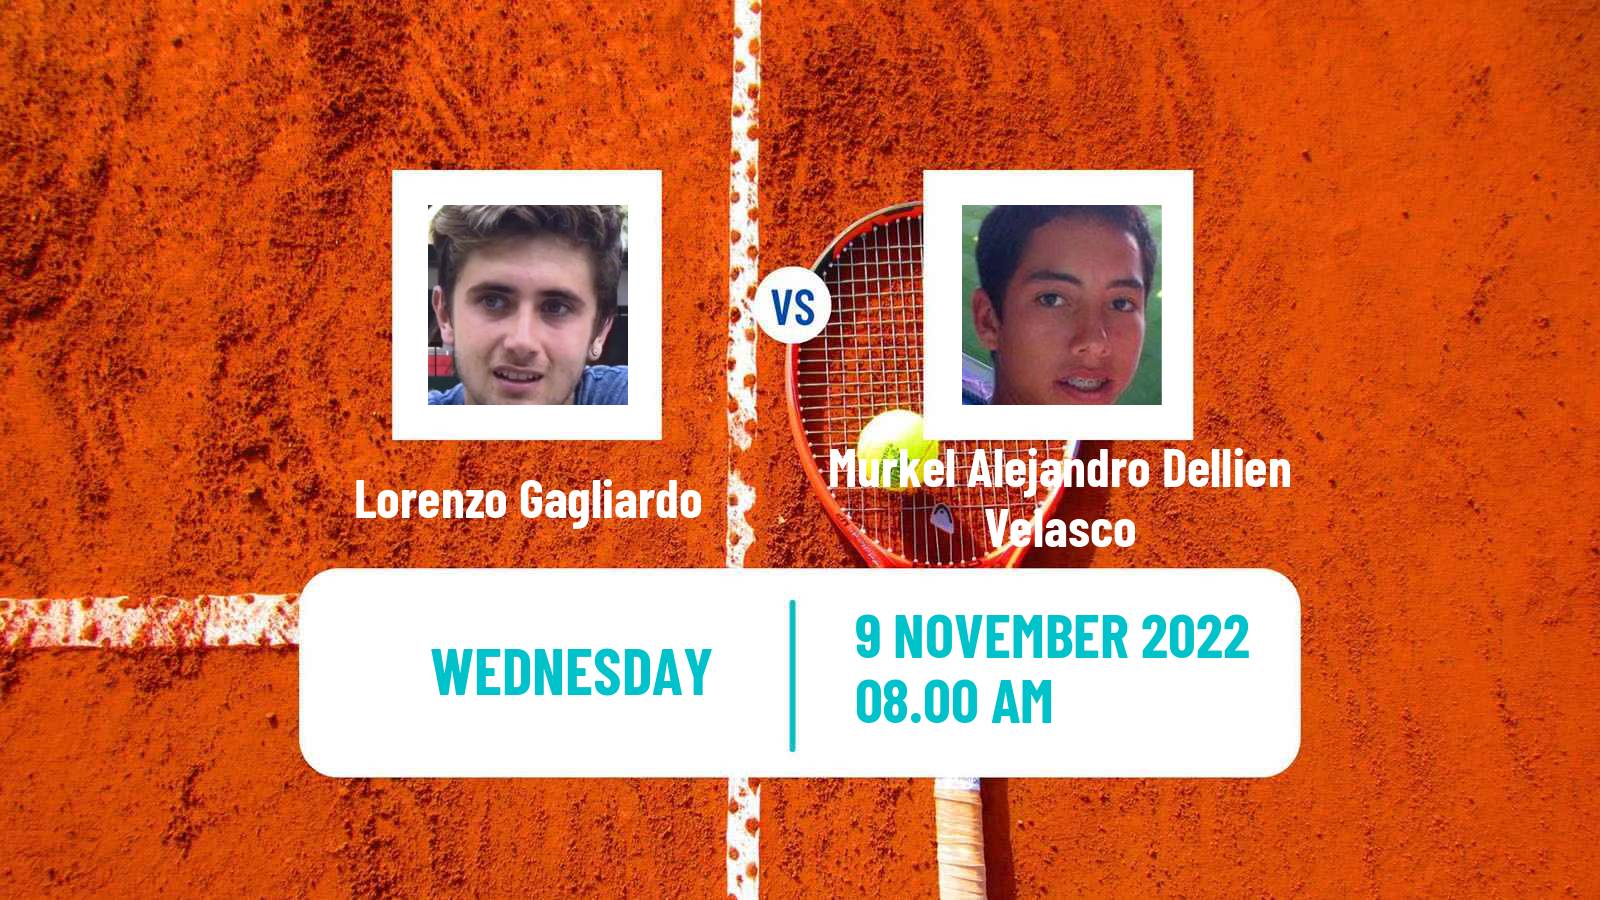 Tennis ITF Tournaments Lorenzo Gagliardo - Murkel Alejandro Dellien Velasco